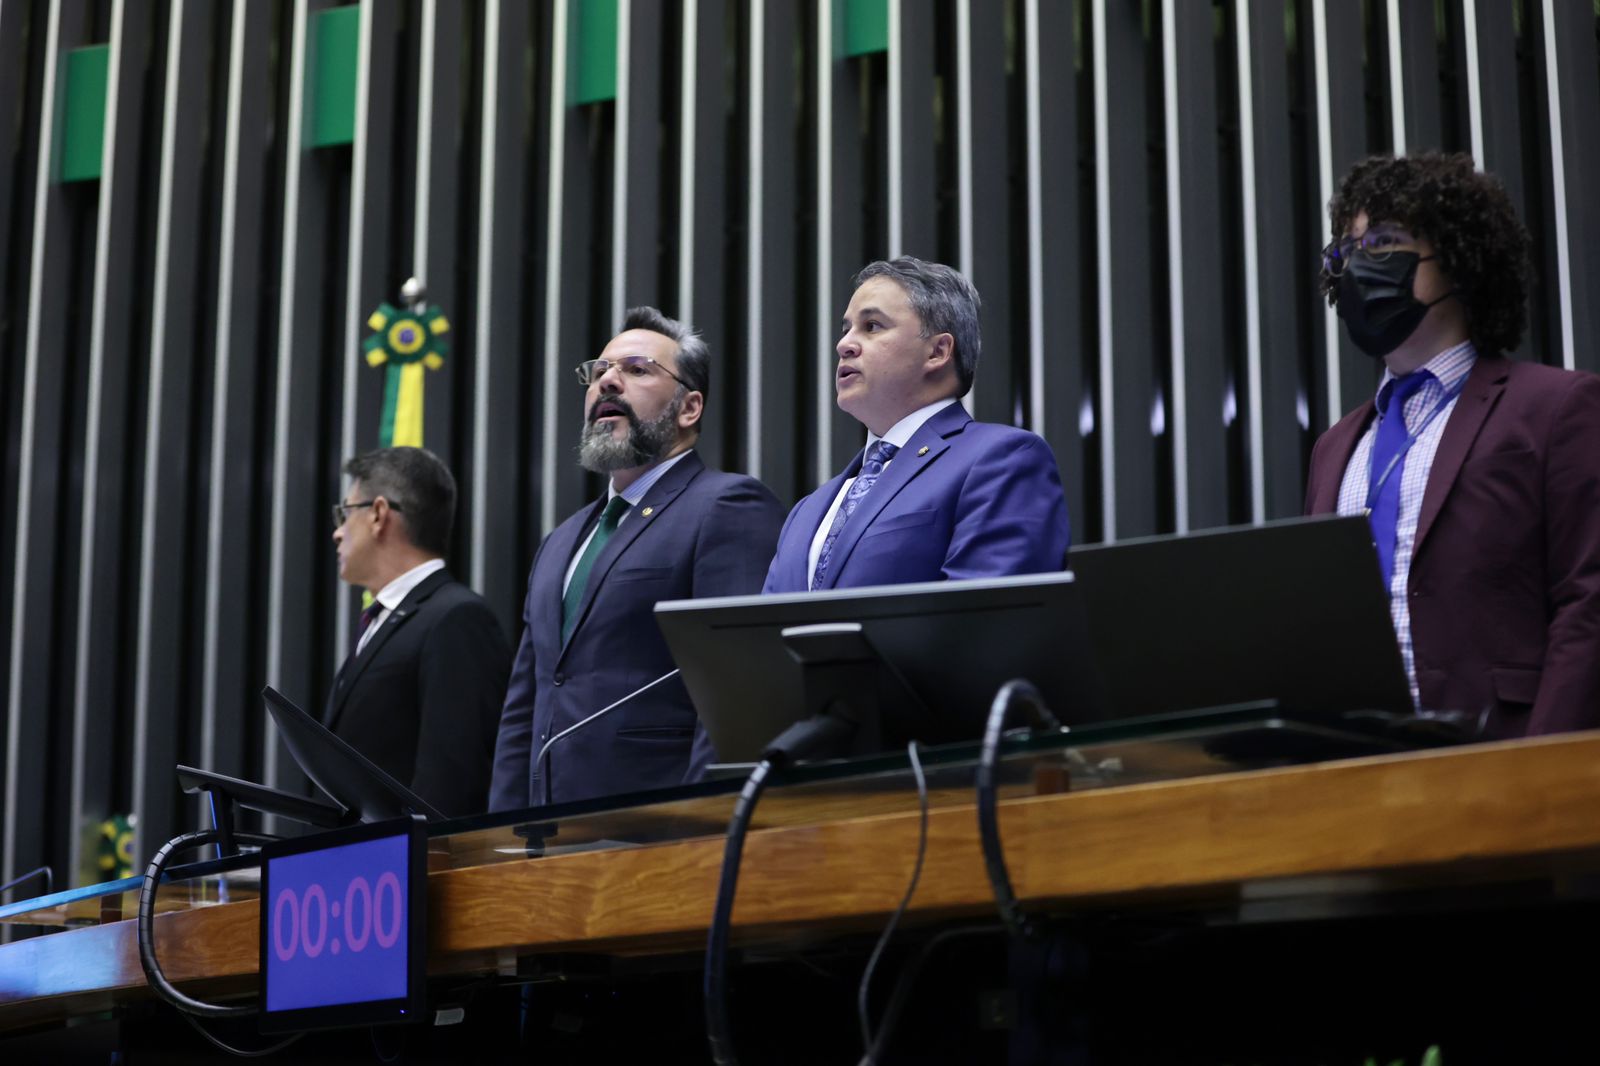 Senadores Alan Rick (AC) e Efraim Filho (PB) em sessão solene do Dia Livre de Impostos, no Congresso Nacional